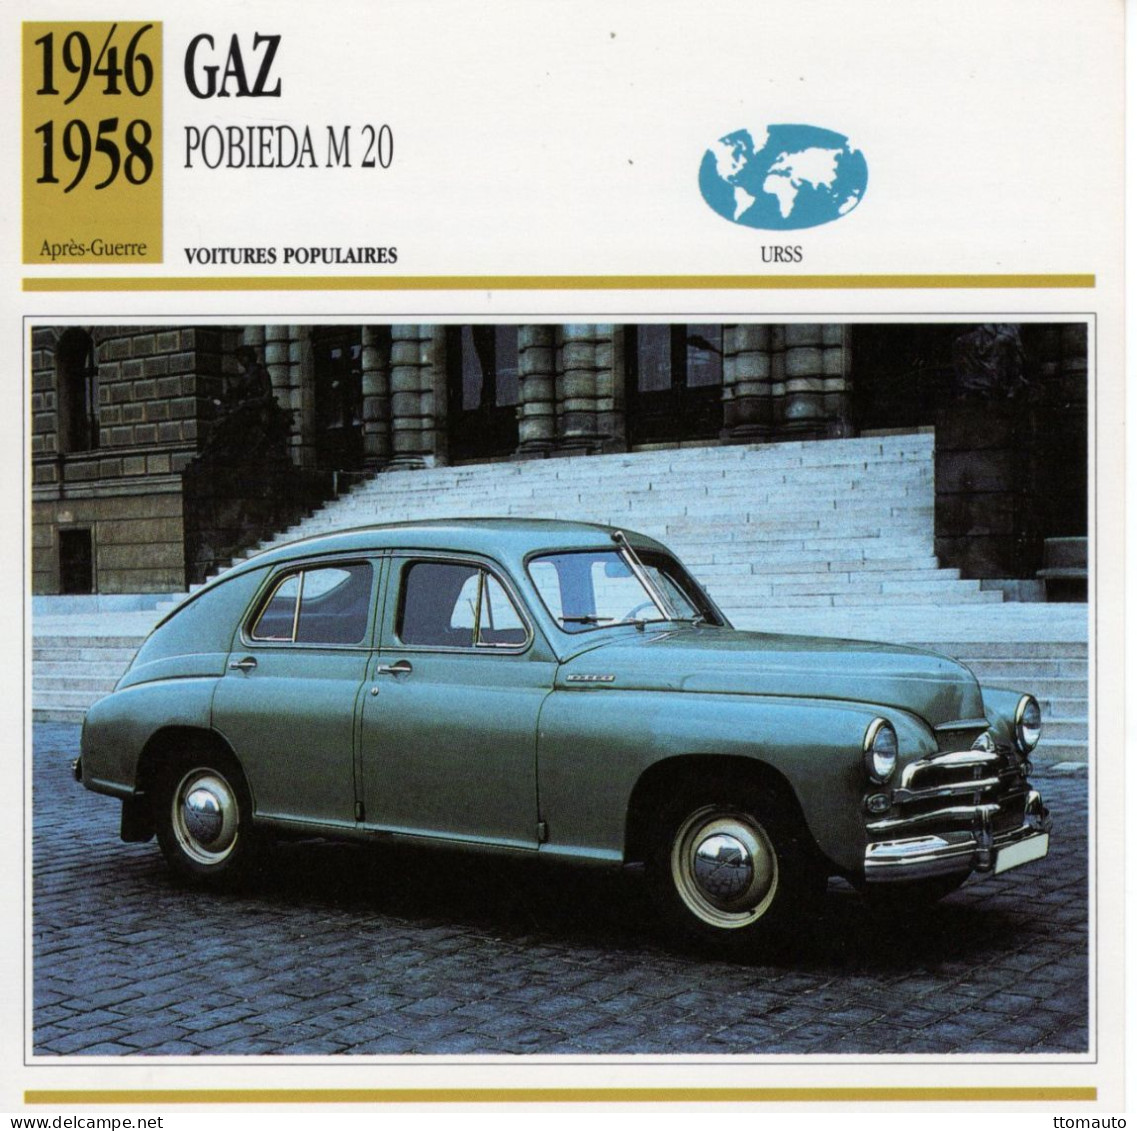 GAZ Pobieda M20  -  1955  - Voiture Populaire -  Fiche Technique Automobile (URSS) - Autos